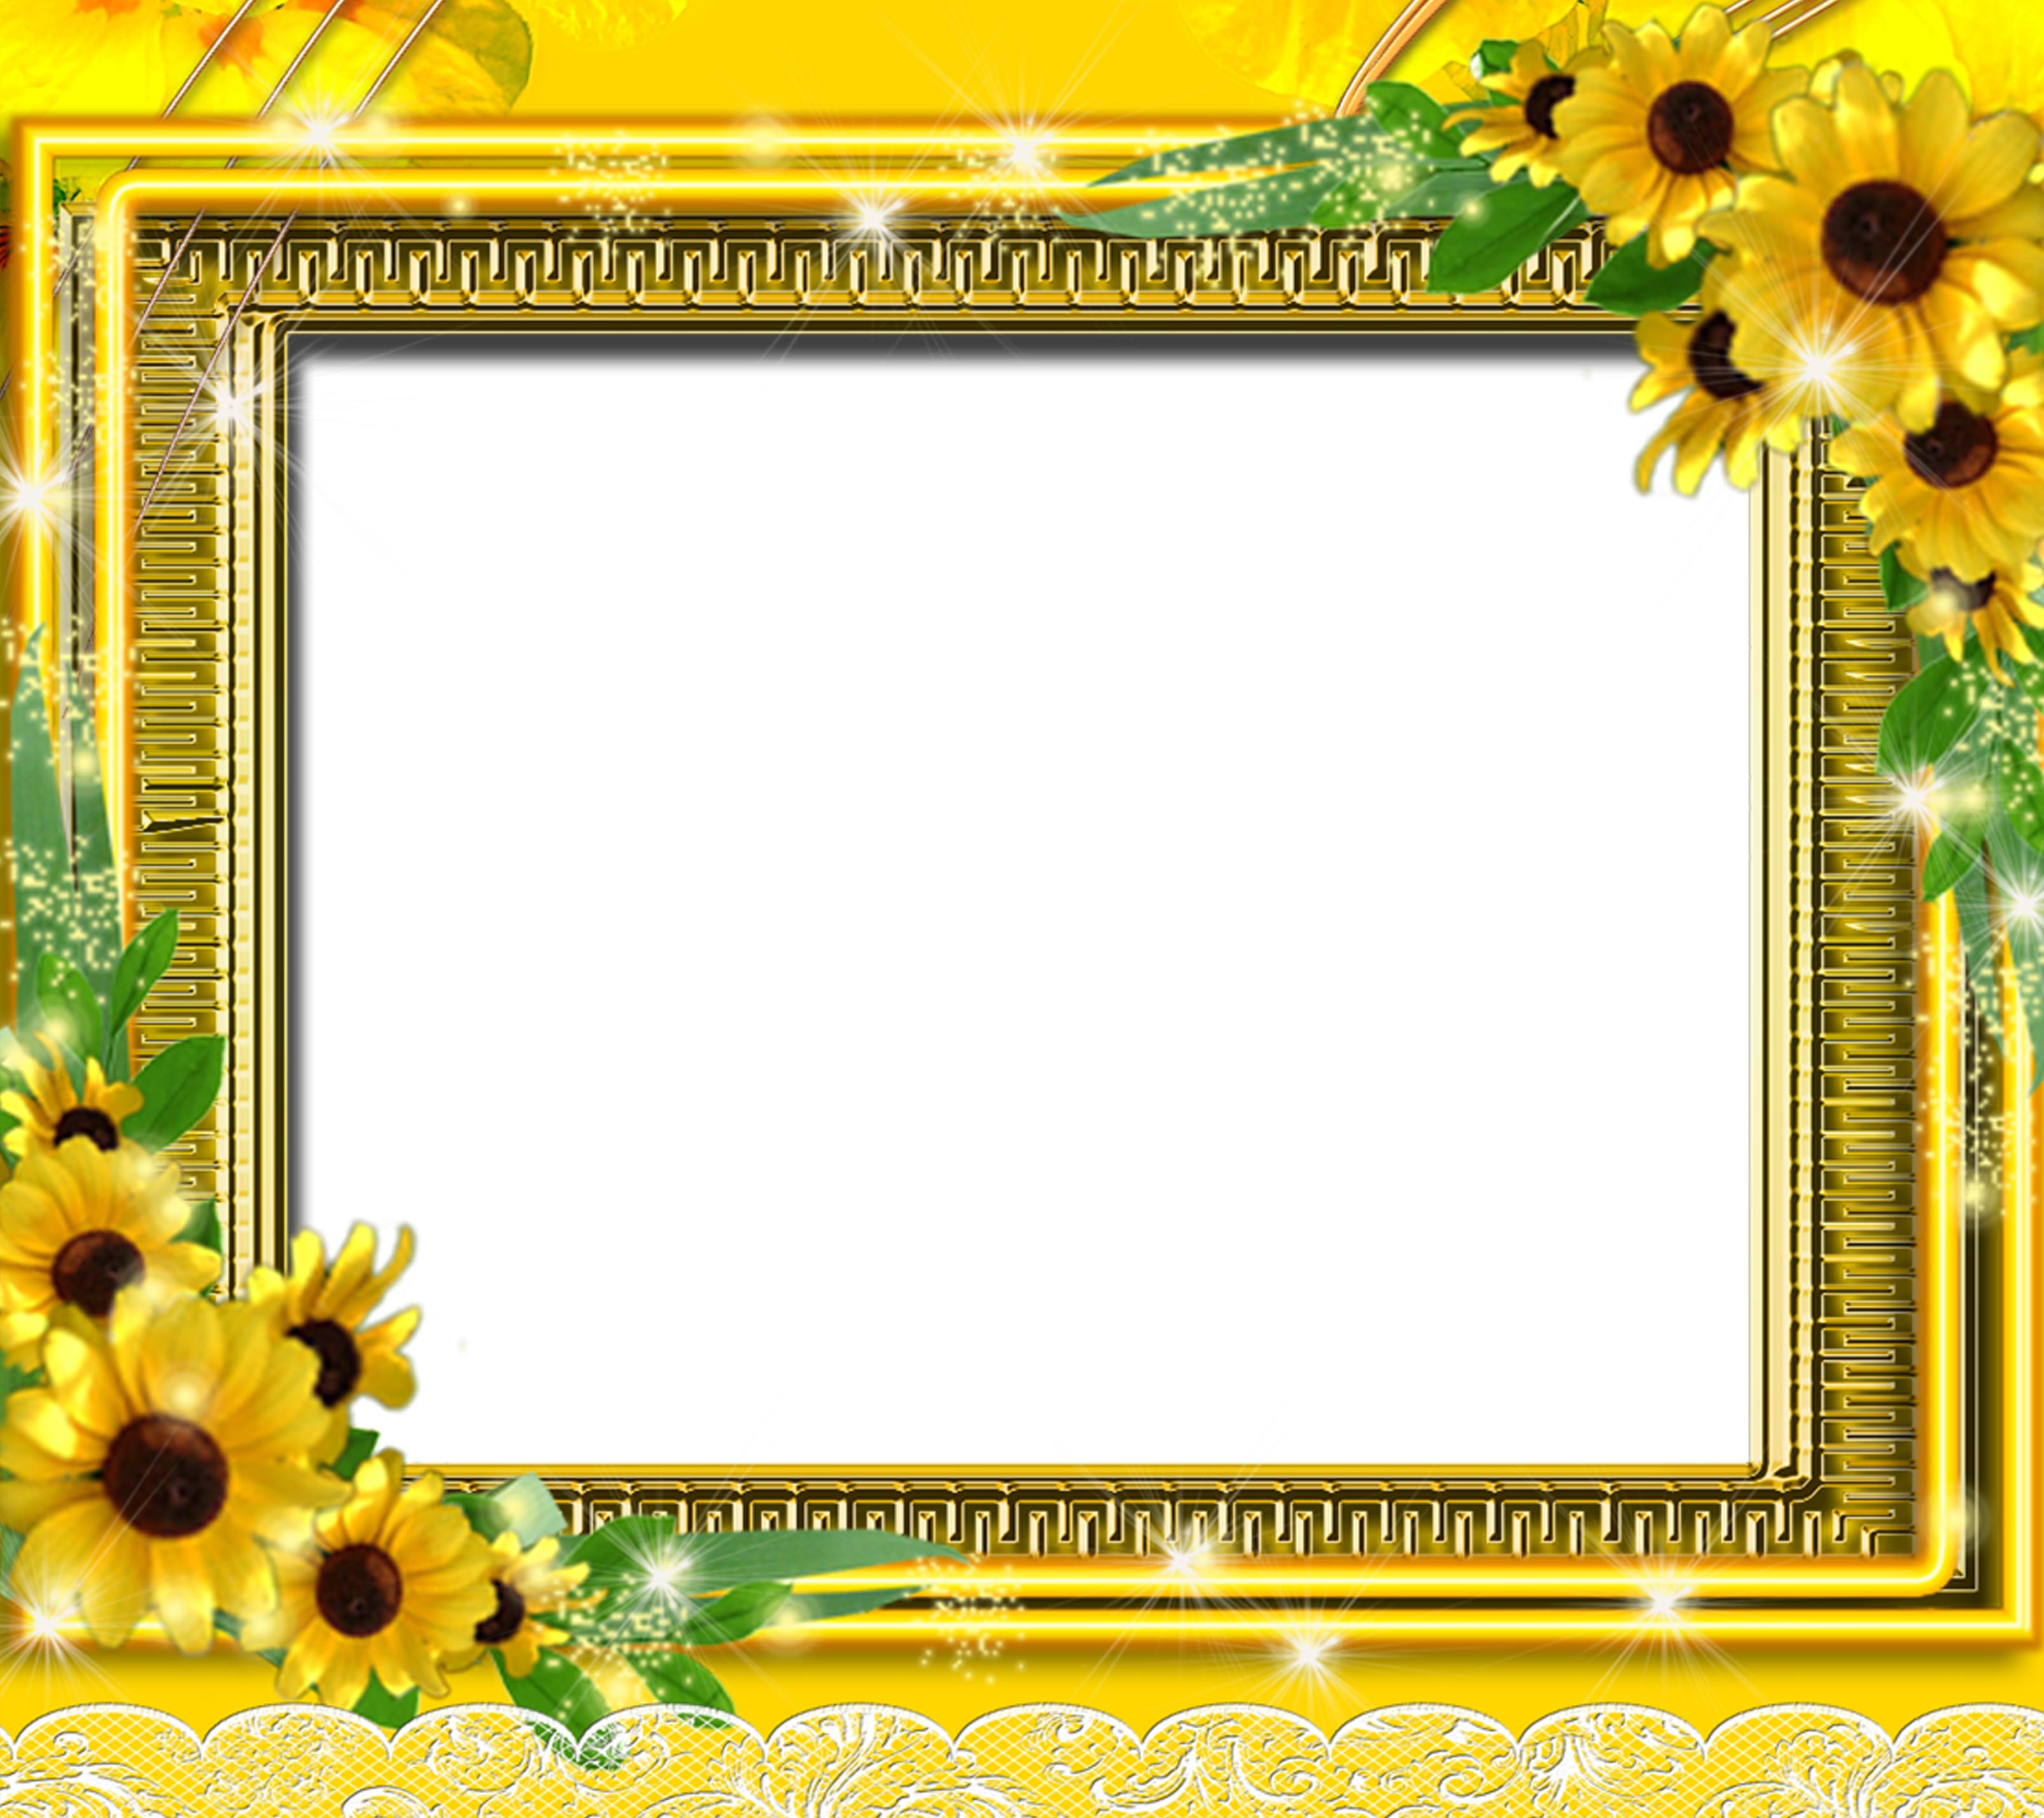 黄色の花のイラスト フリー素材 背景 壁紙no 2 黄 金色 ゴージャス